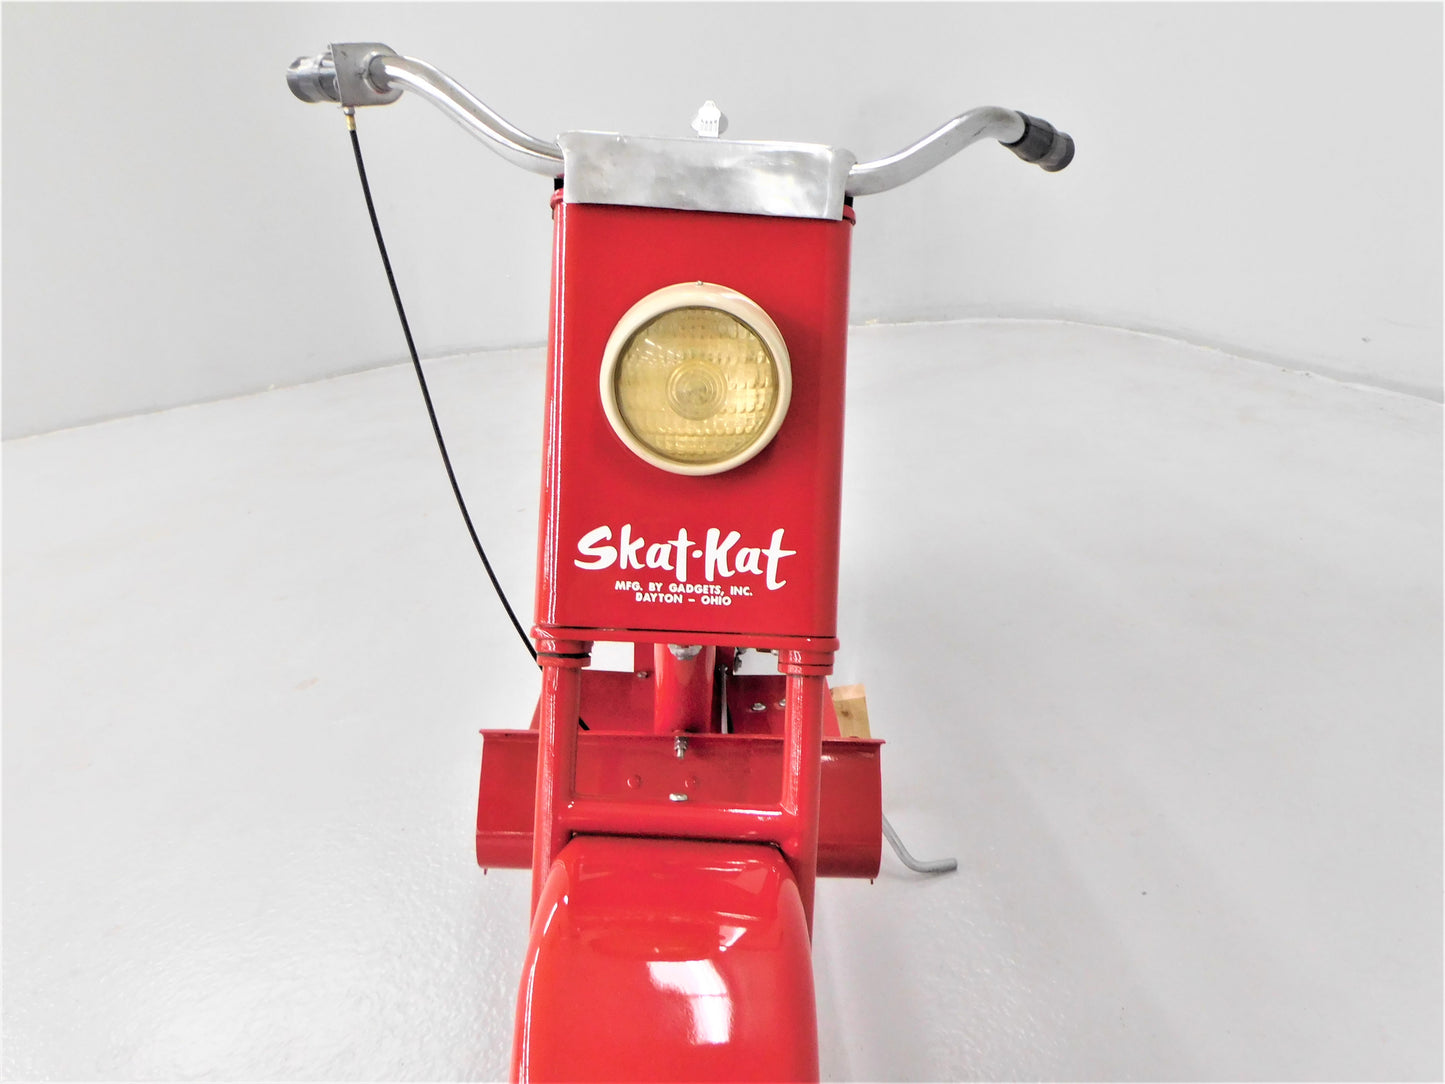 1959 Skat-Kat Scooter